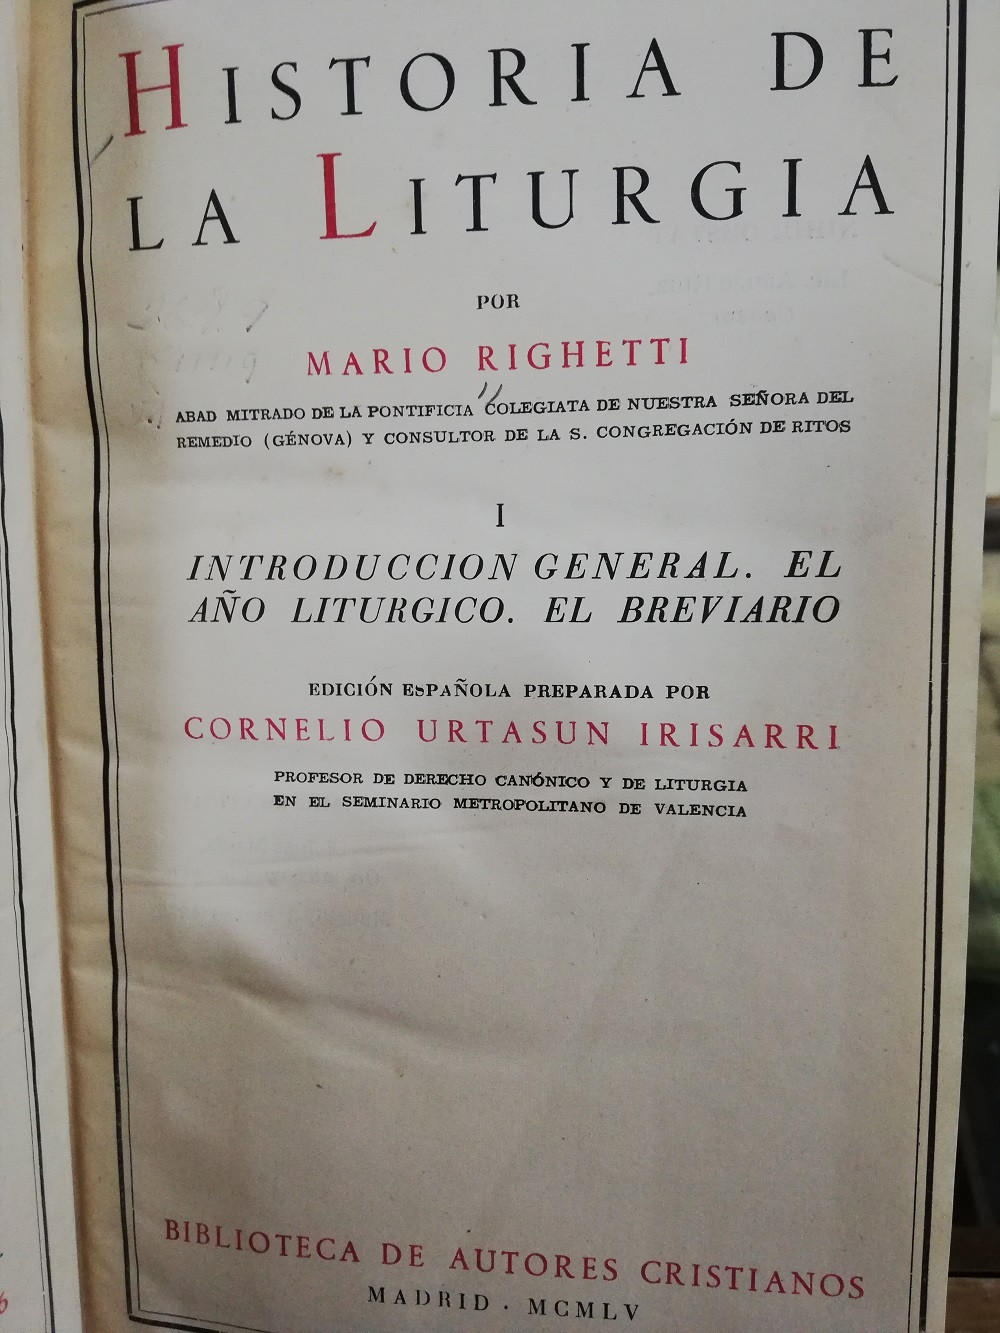 Imagen HISTORIA DE LA LITURGIA - MARIO RIGHETTI 2